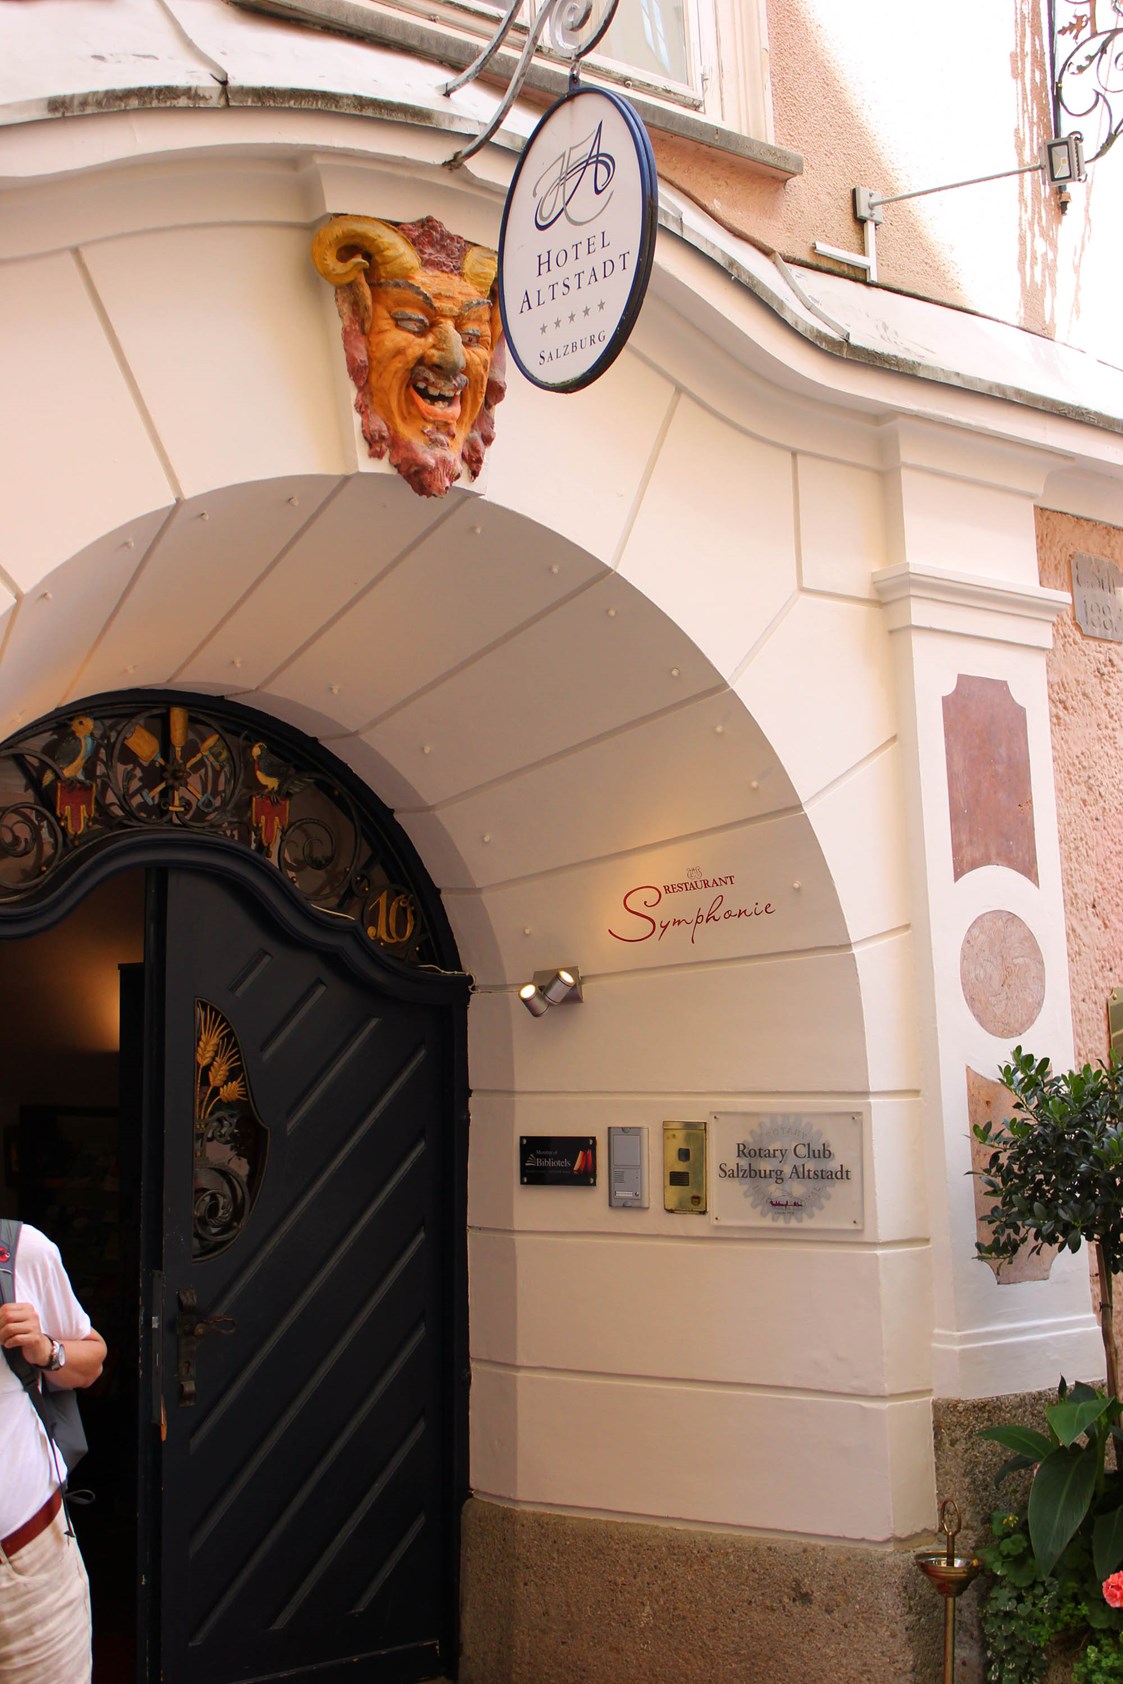 Restaurant: Symphonie, Restaurant im Radisson Blu Hotel Altstadt